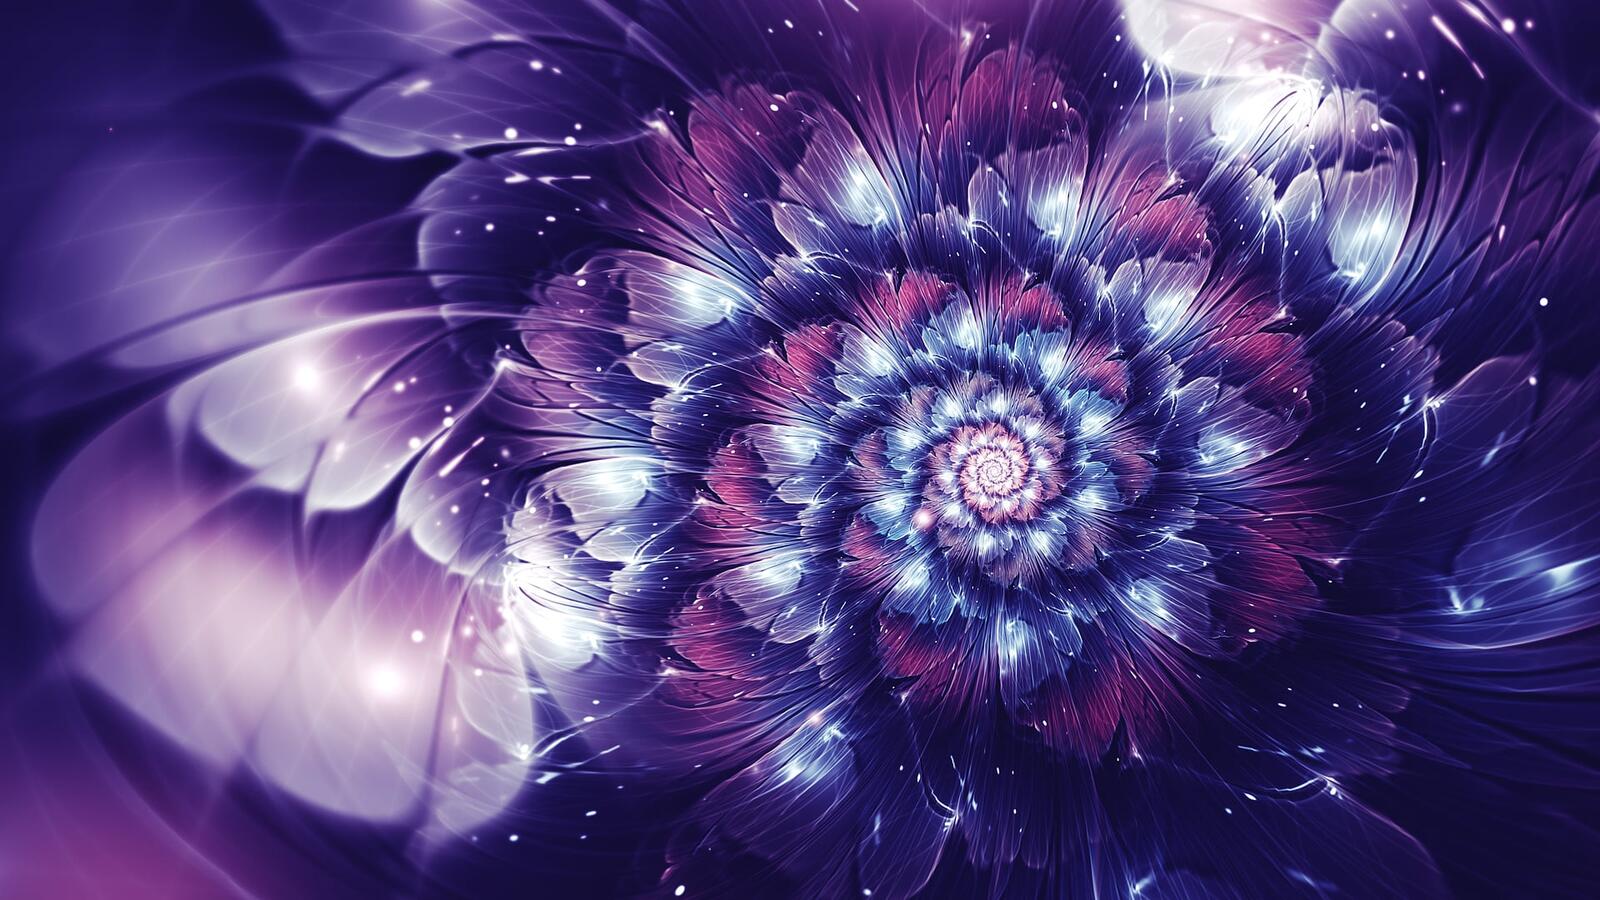 Бесплатное фото Абстрактный цветок фиолетового цвета